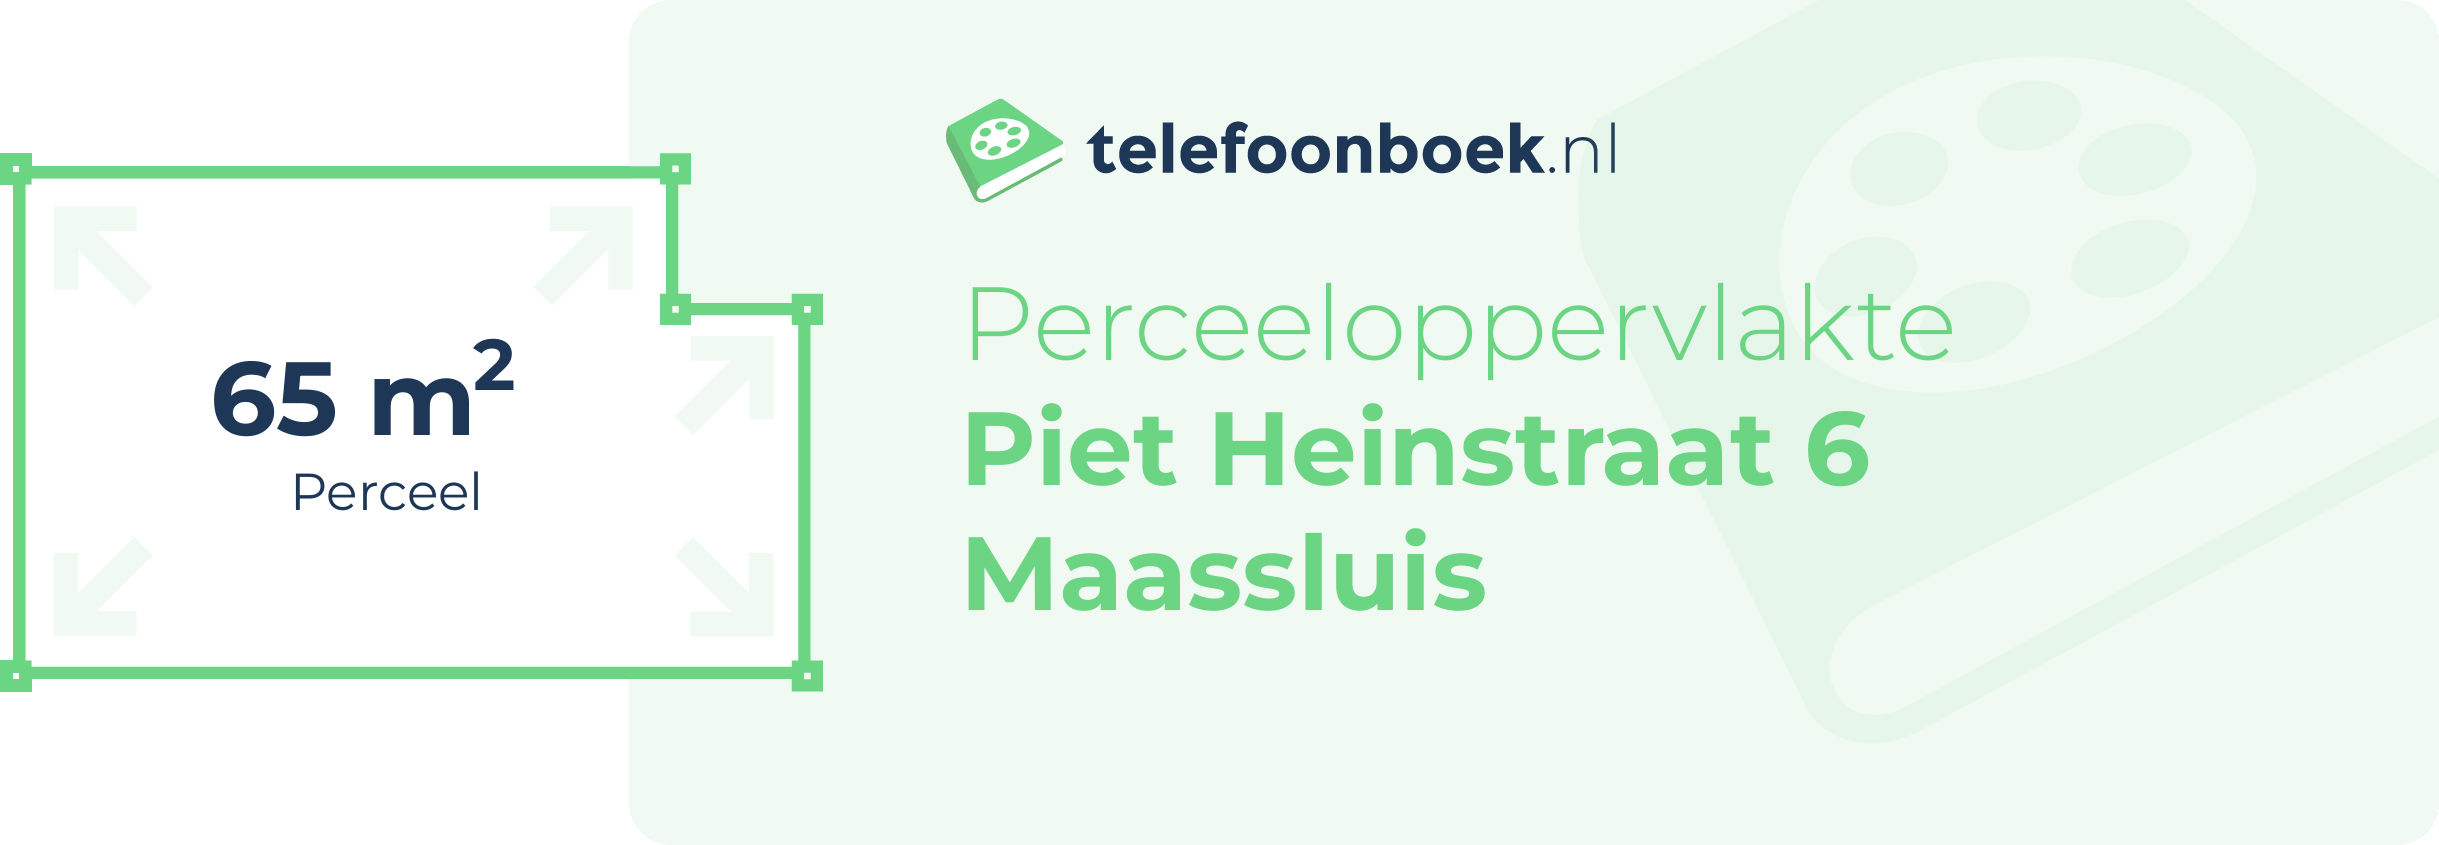 Perceeloppervlakte Piet Heinstraat 6 Maassluis